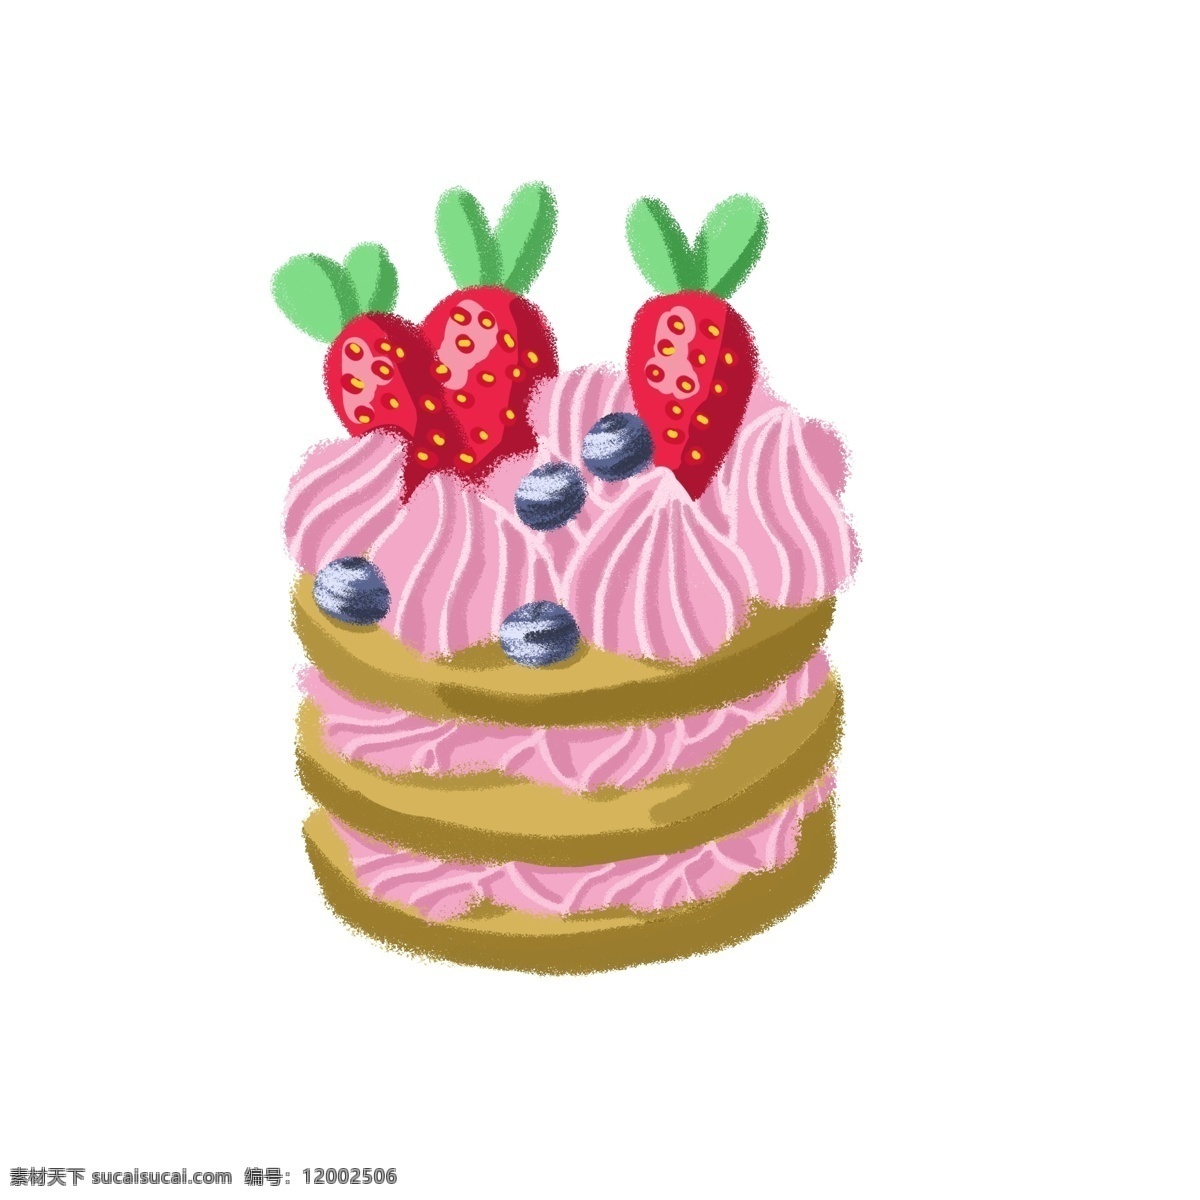 三 层 草莓 蓝莓 奶油 小 蛋糕 三层蛋糕 小蛋糕 草莓口味 奶油霜 鲜奶油 叶子 绿叶 甜品 甜食 甜点